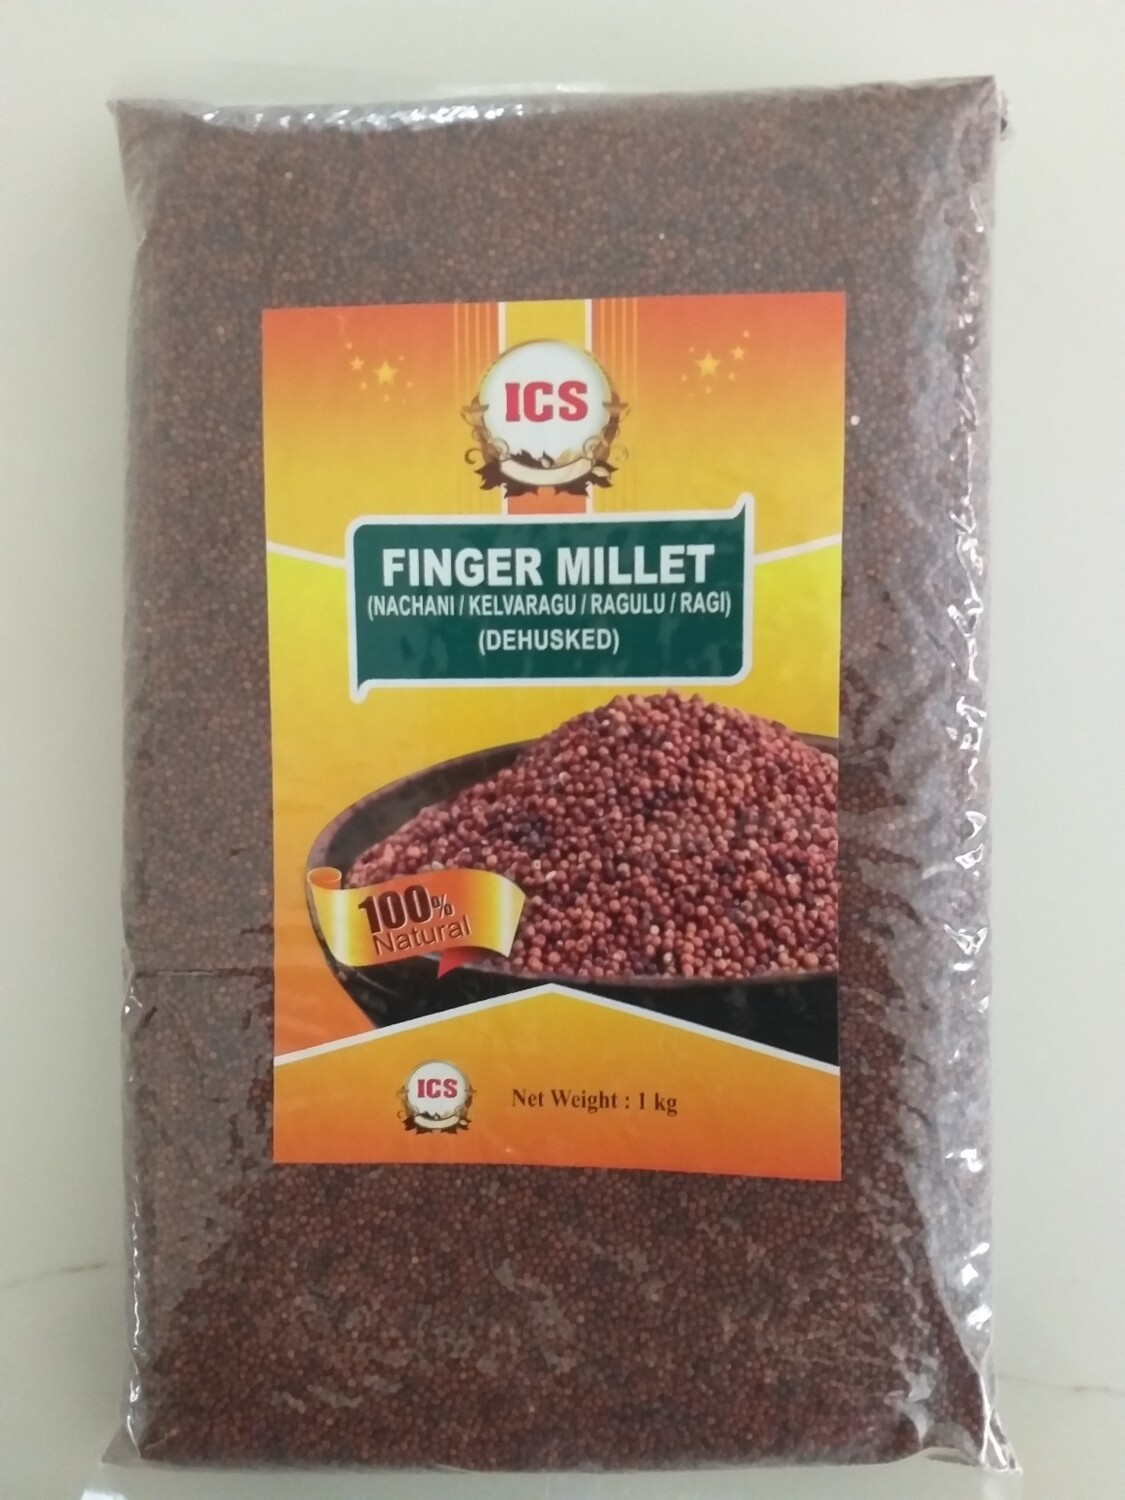 ICS RAGI MILLET (Finger Millet) 1 KG